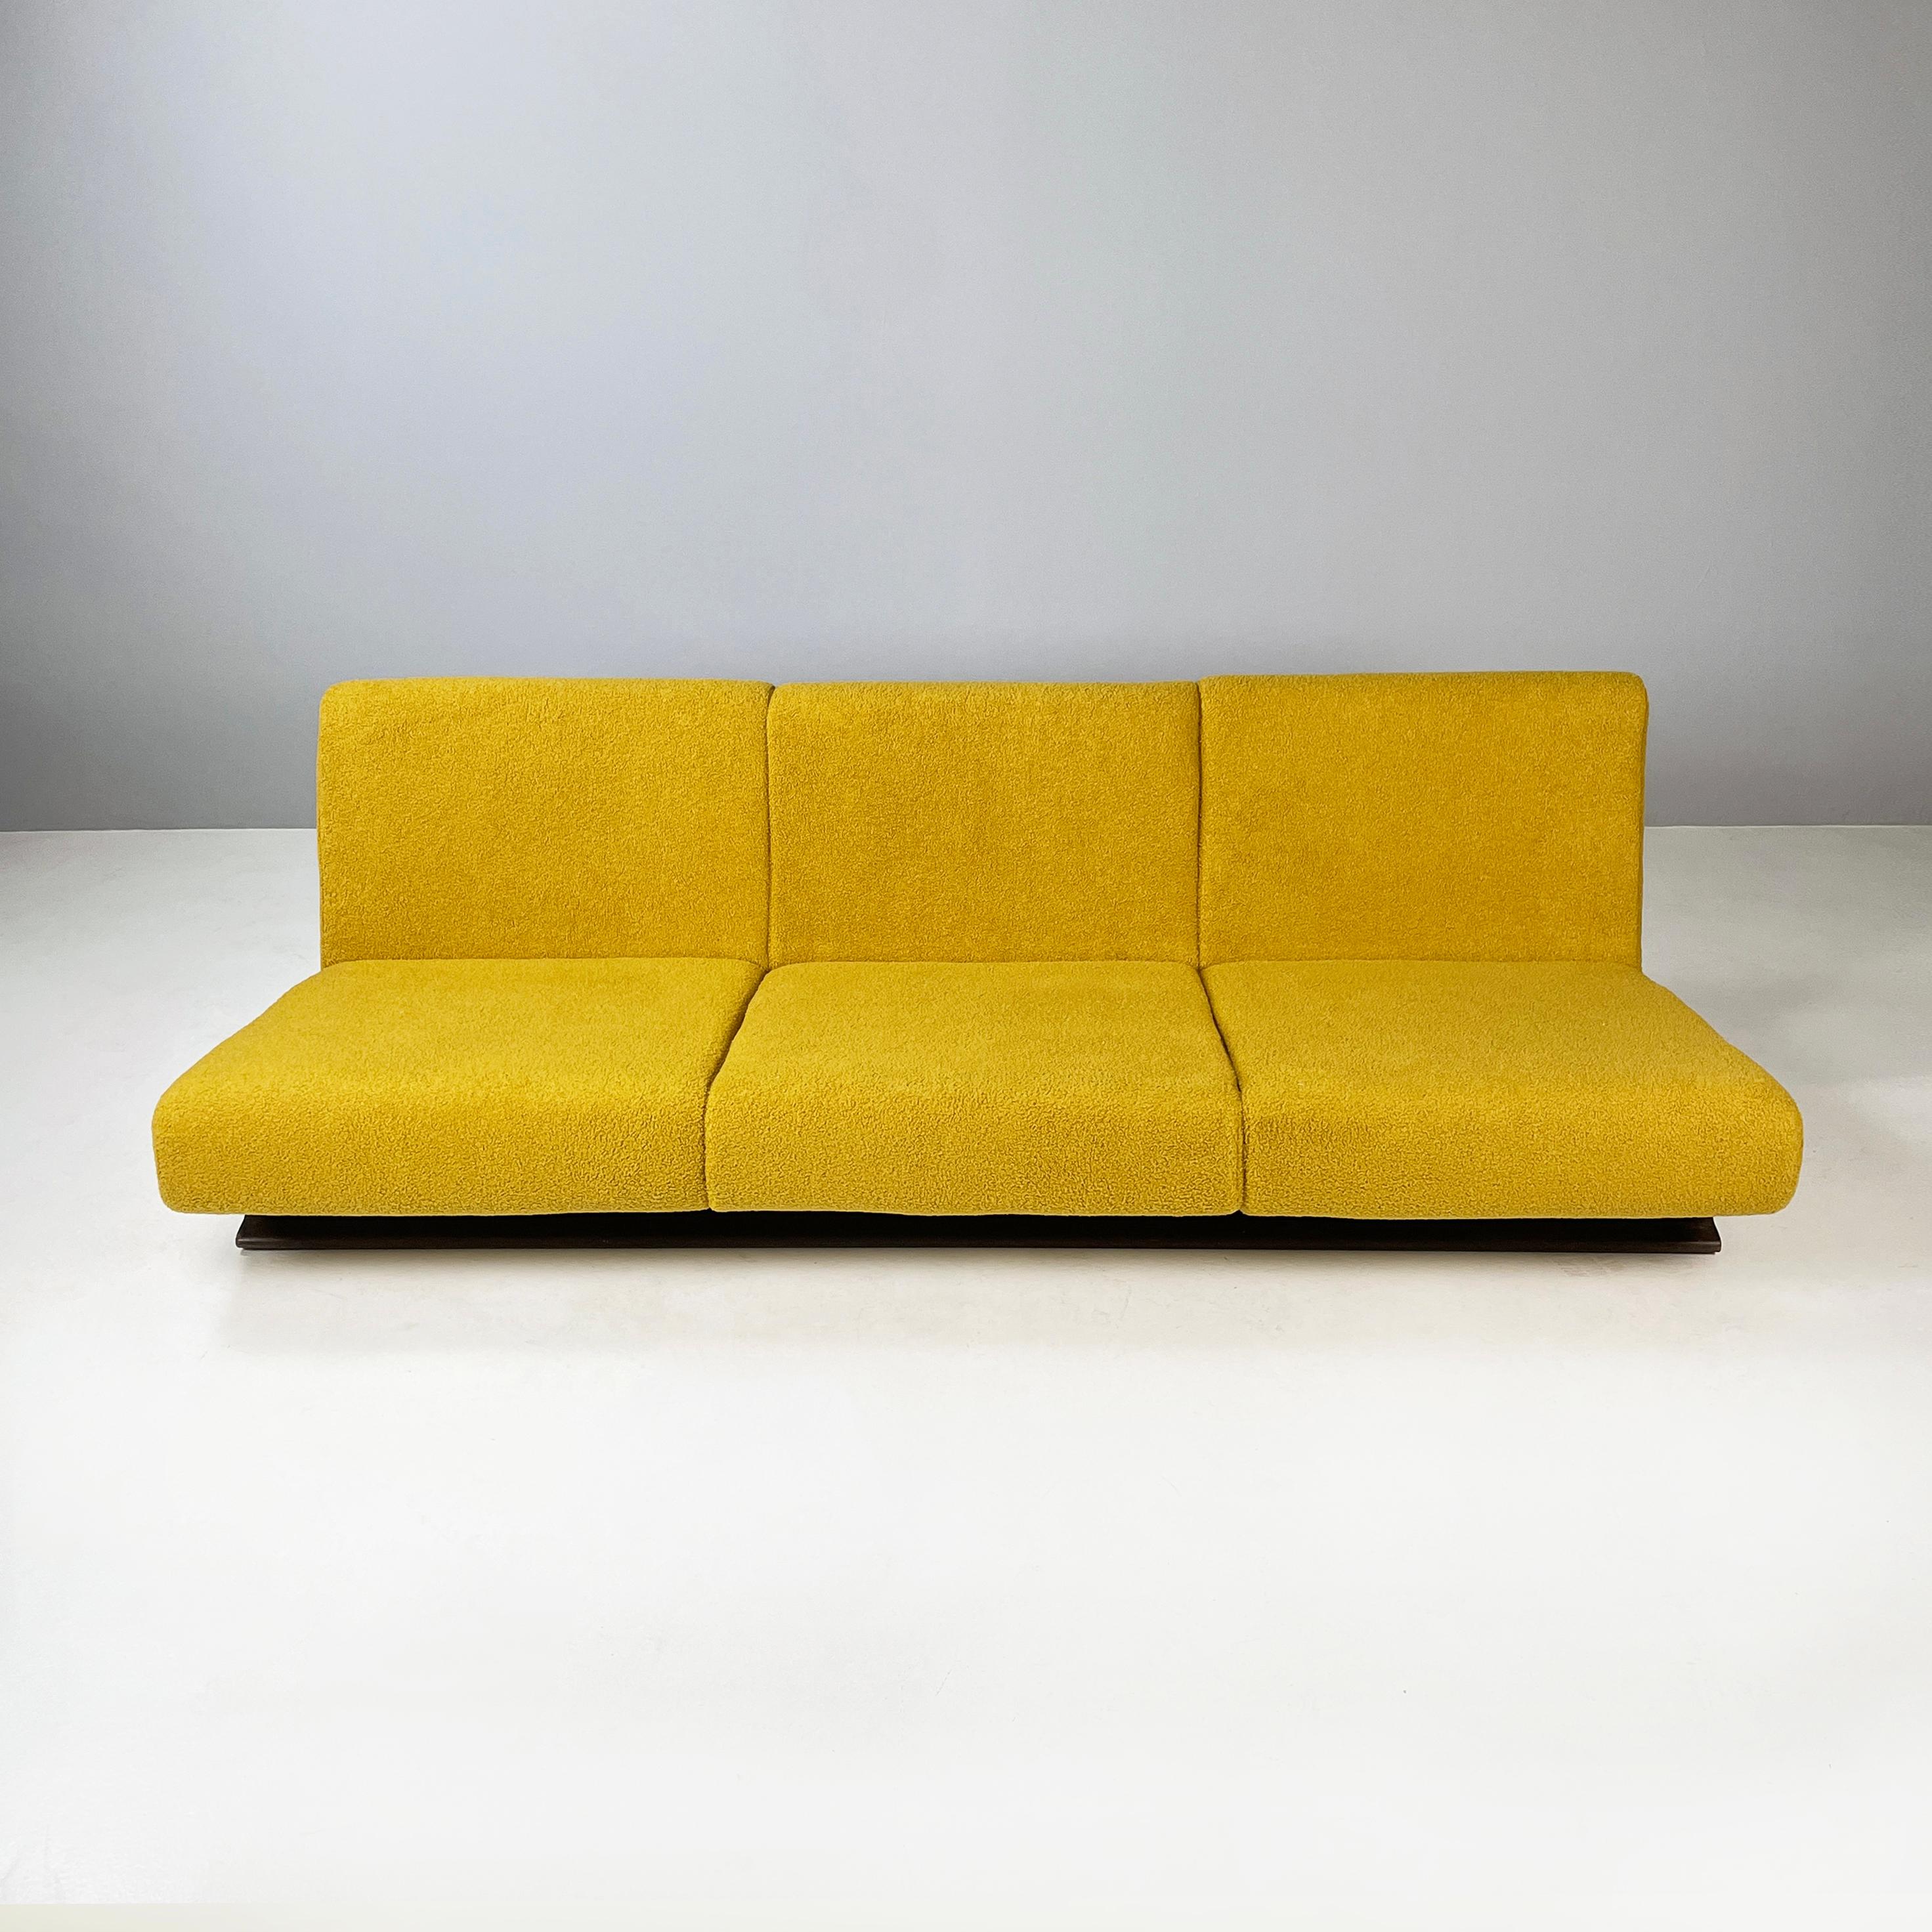 Italienisches Space Age Dreisitzer-Sofa aus gelbem Stoff und schwarzem Holz, 1970er Jahre
Dreisitzer-Sofa mit quadratischer Sitzfläche und Rückenlehne, gepolstert und mit gelbem Teddystoff bezogen. Die Beine bestehen aus zwei Leisten aus schwarz